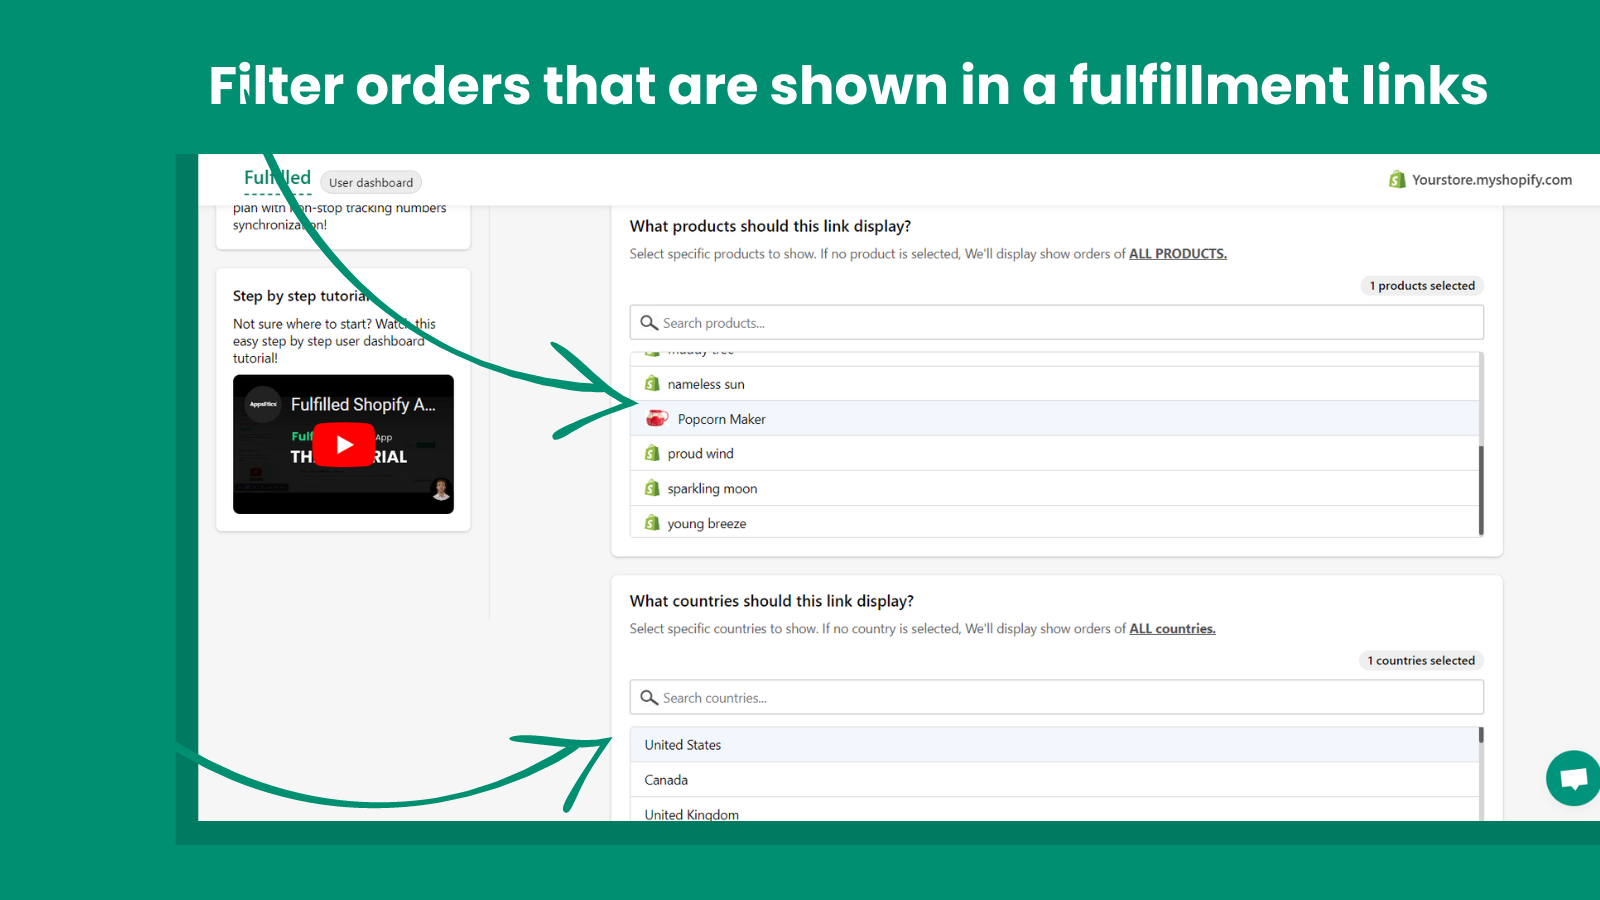 Utilisez des filtres pour laisser les fournisseurs voir les commandes que vous voulez qu'ils voient !